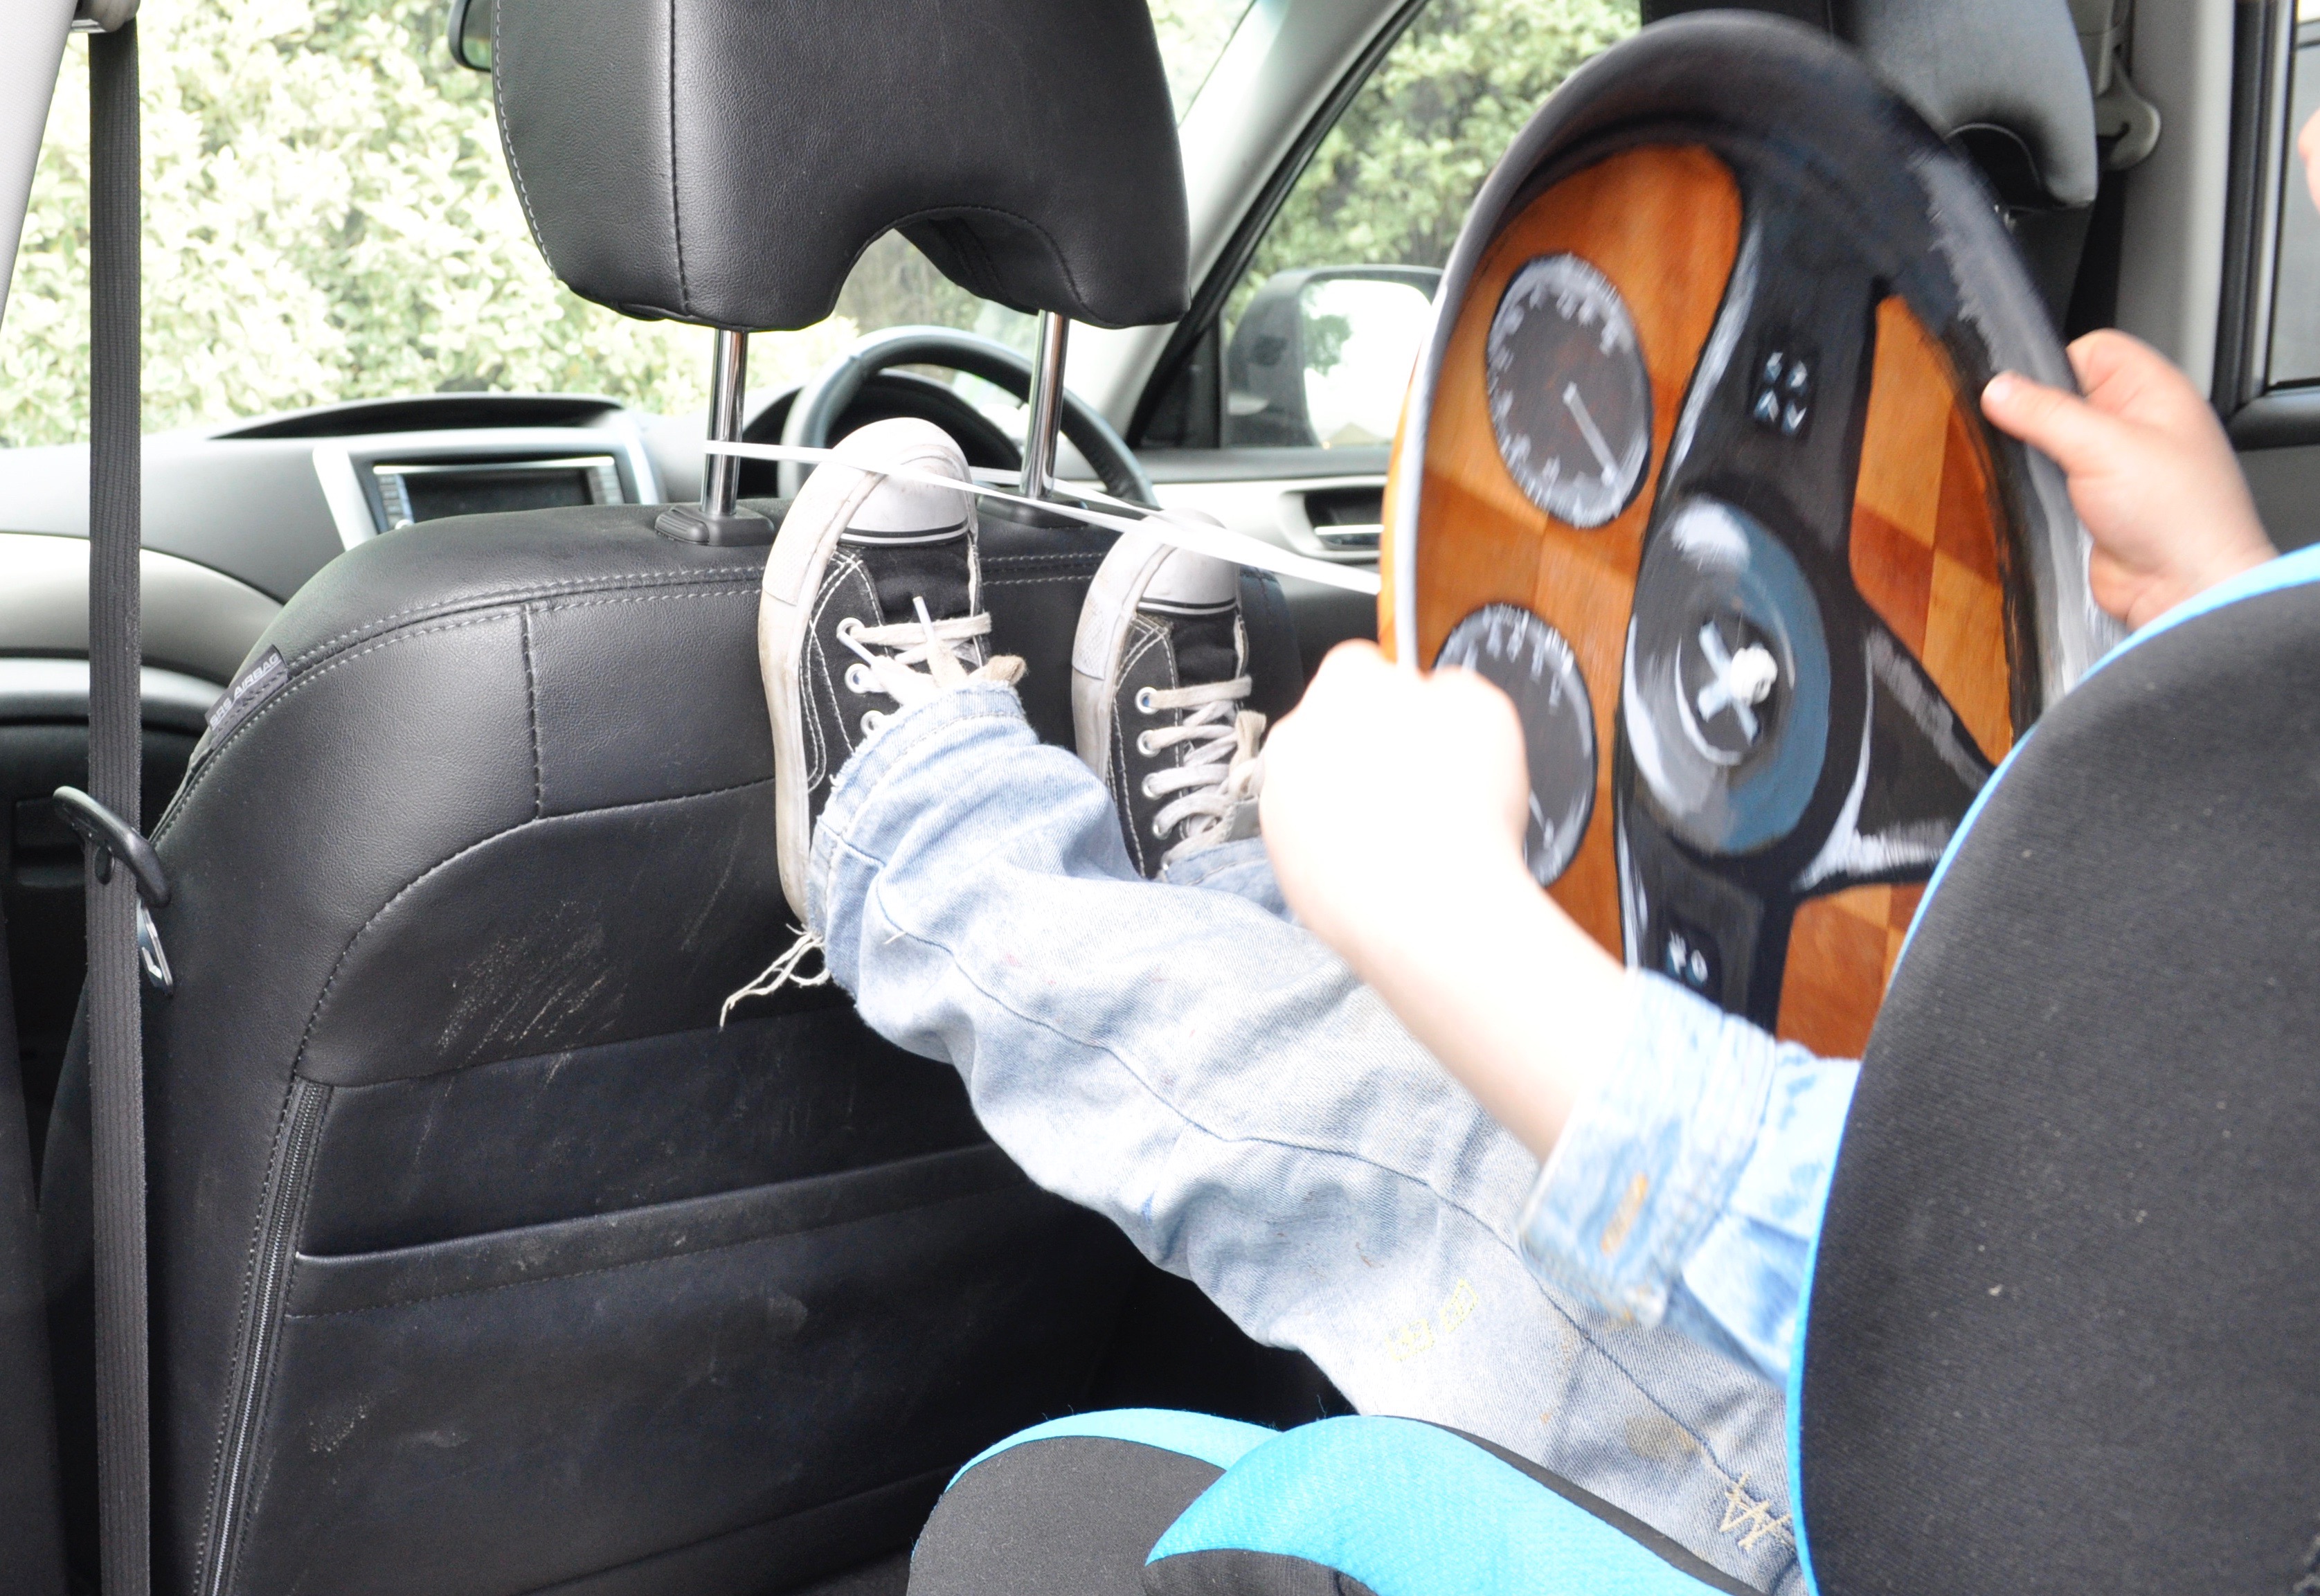 kids steering wheel